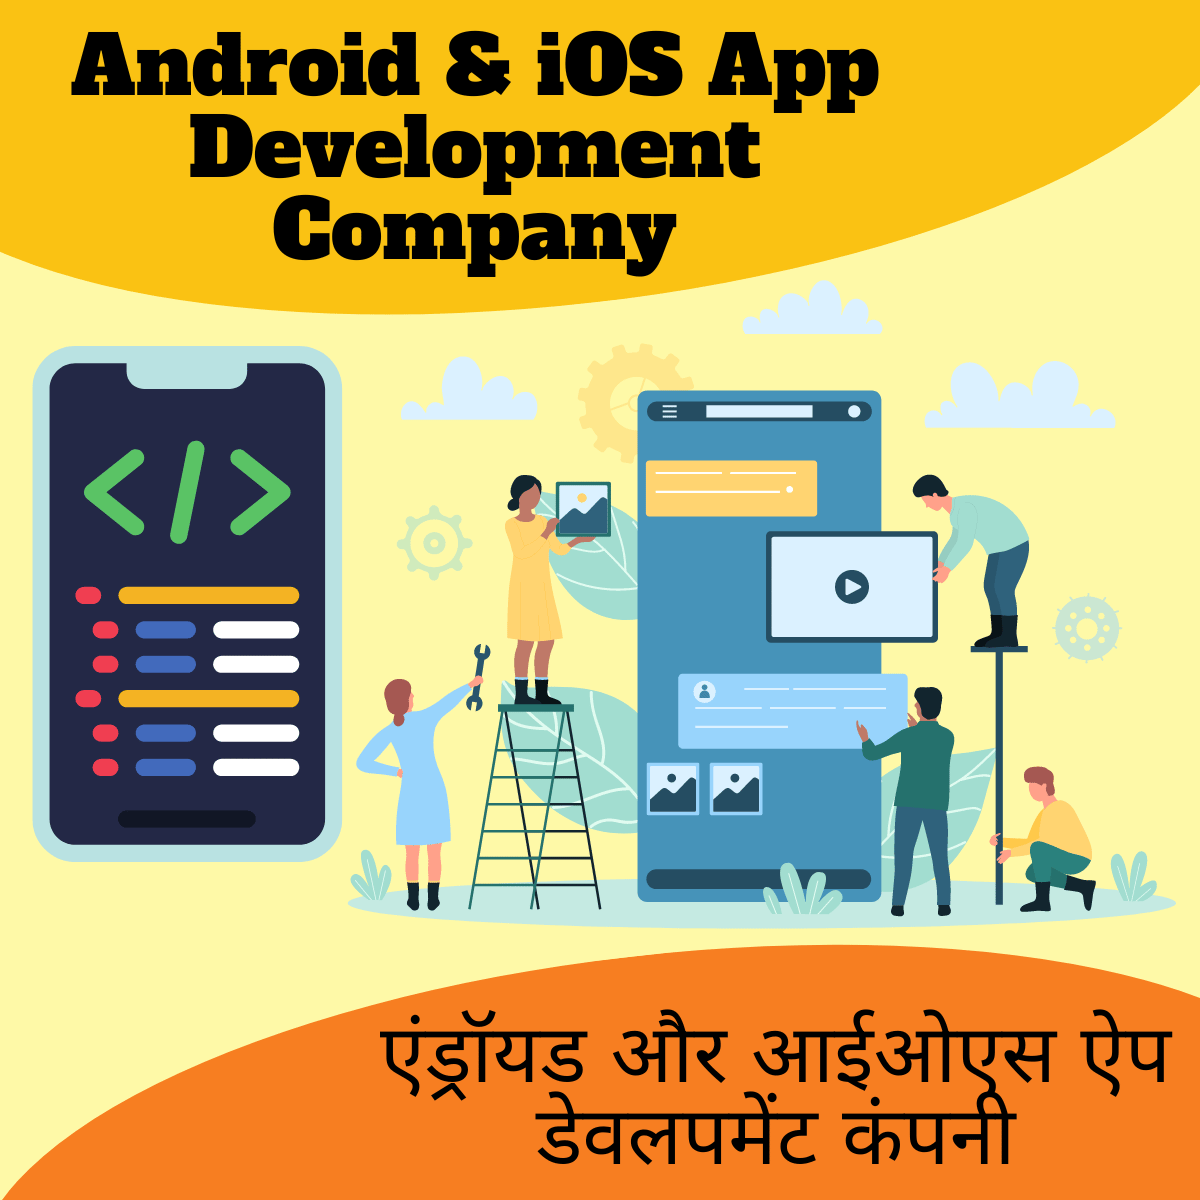 Android & iOS App Development Company

एंड्रॉयड और आईओएस ऐप डेवलपमेंट कंपनी